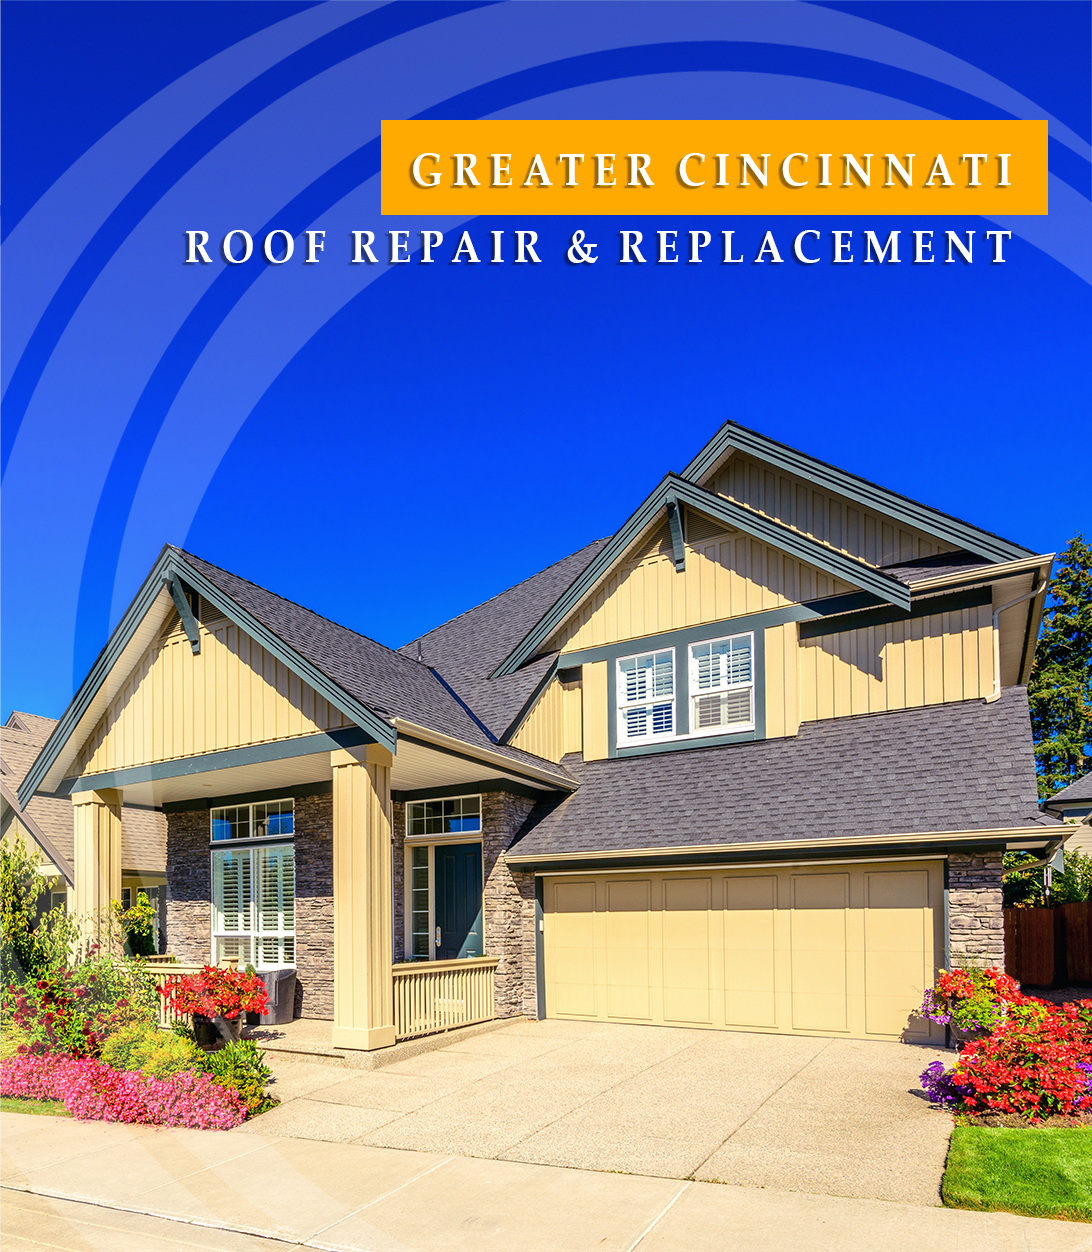 Roof Repair & Replacement in Greater Cincinnati